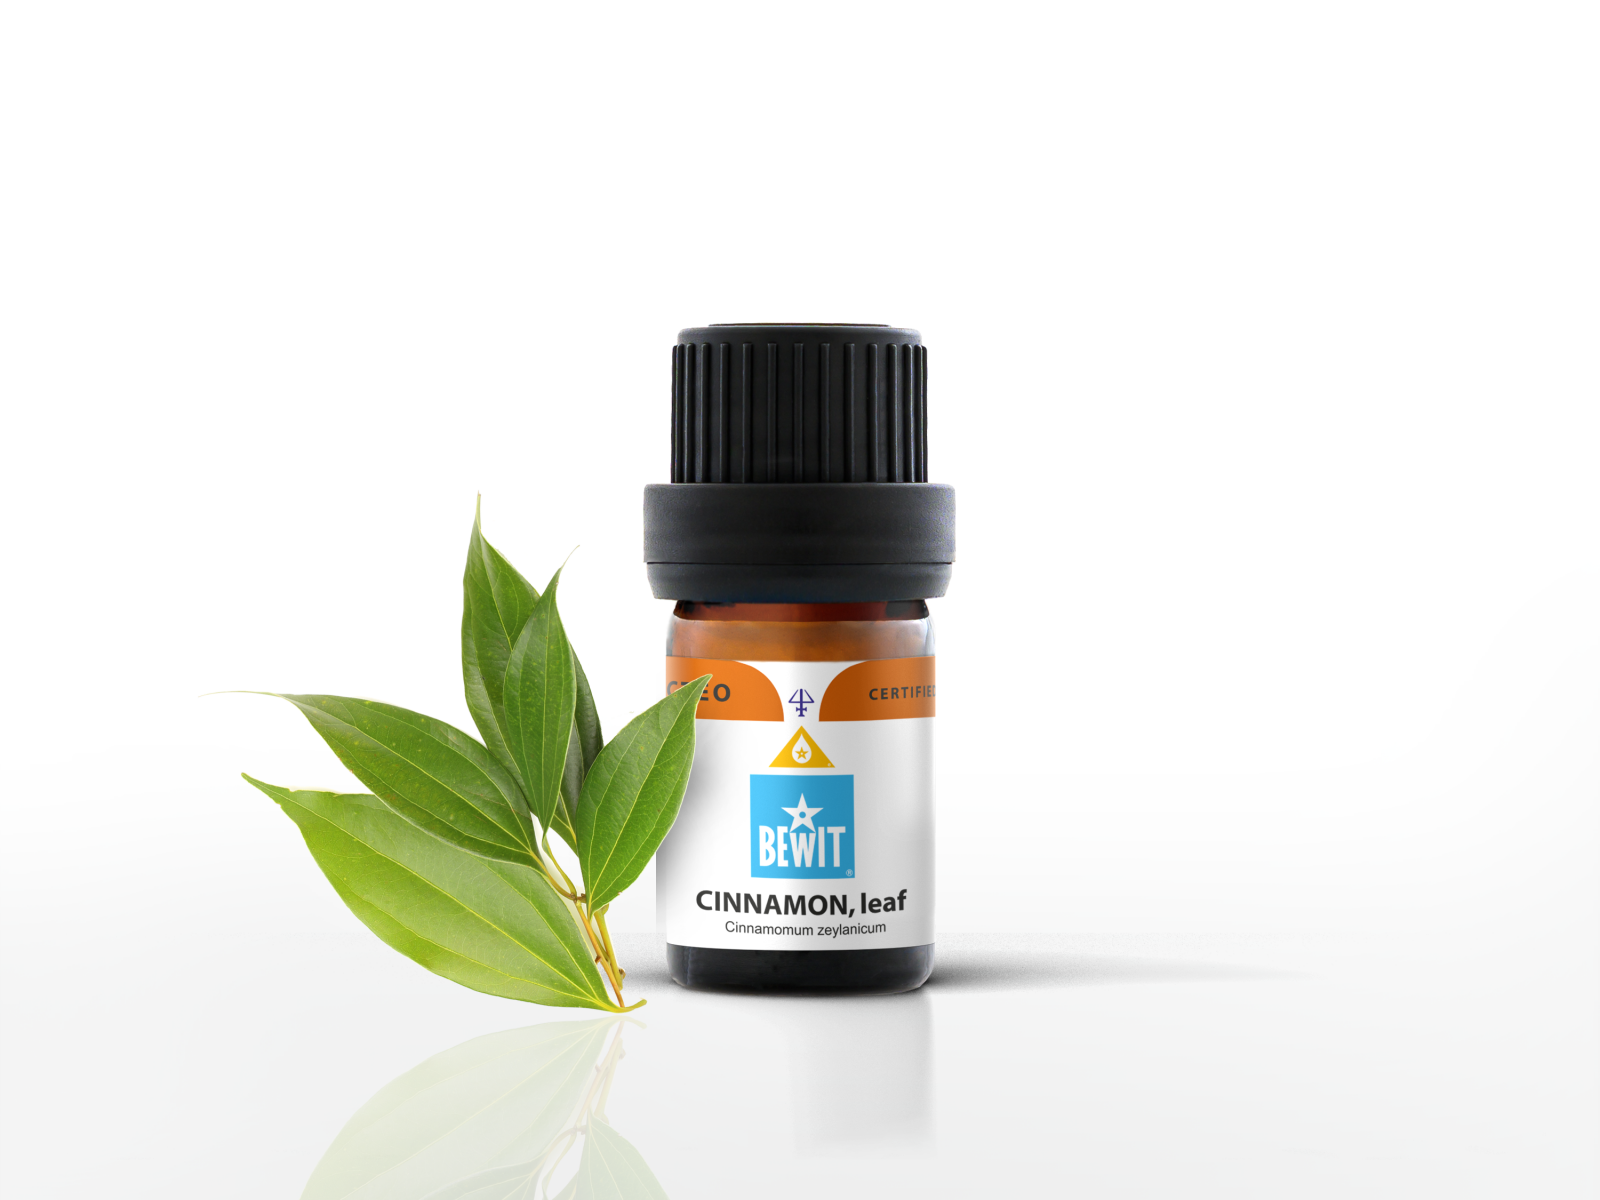 BEWIT Cinnamon, leaf - 100% pure essential oil - 3